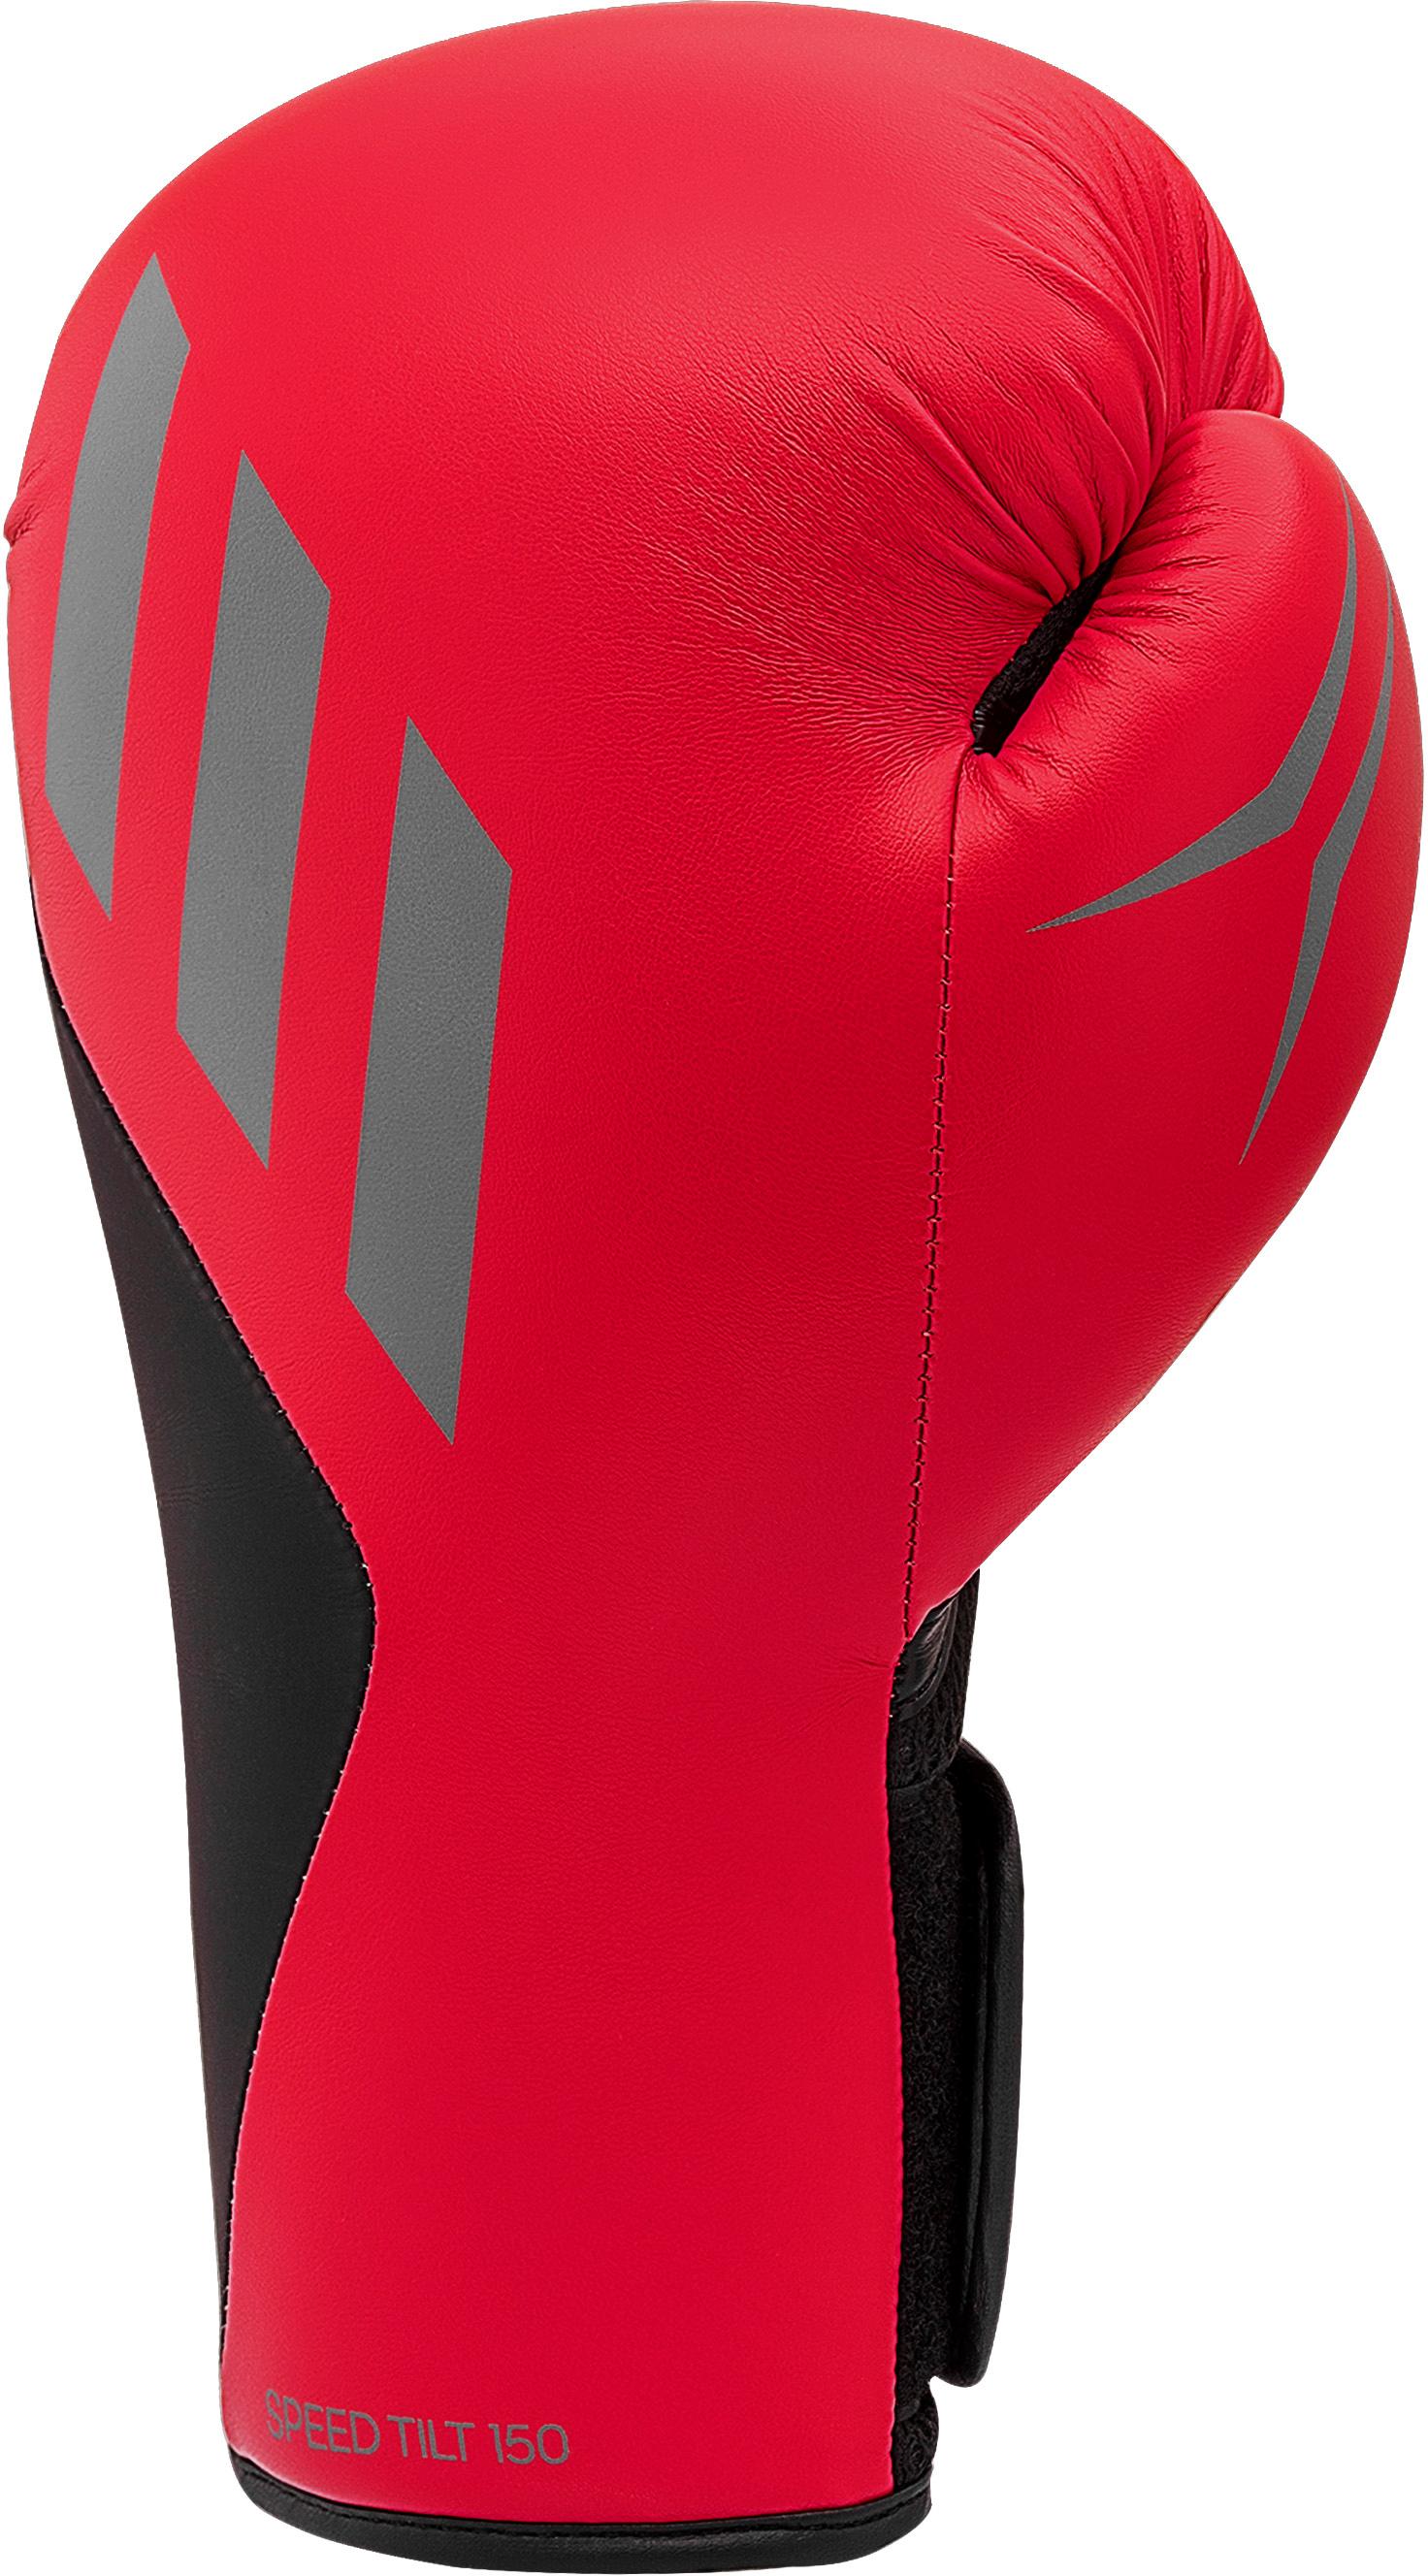 Adidas Speed Tilt Shop Herren 150 kaufen Boxhandschuhe im SportScheck rot-schwarz Online von